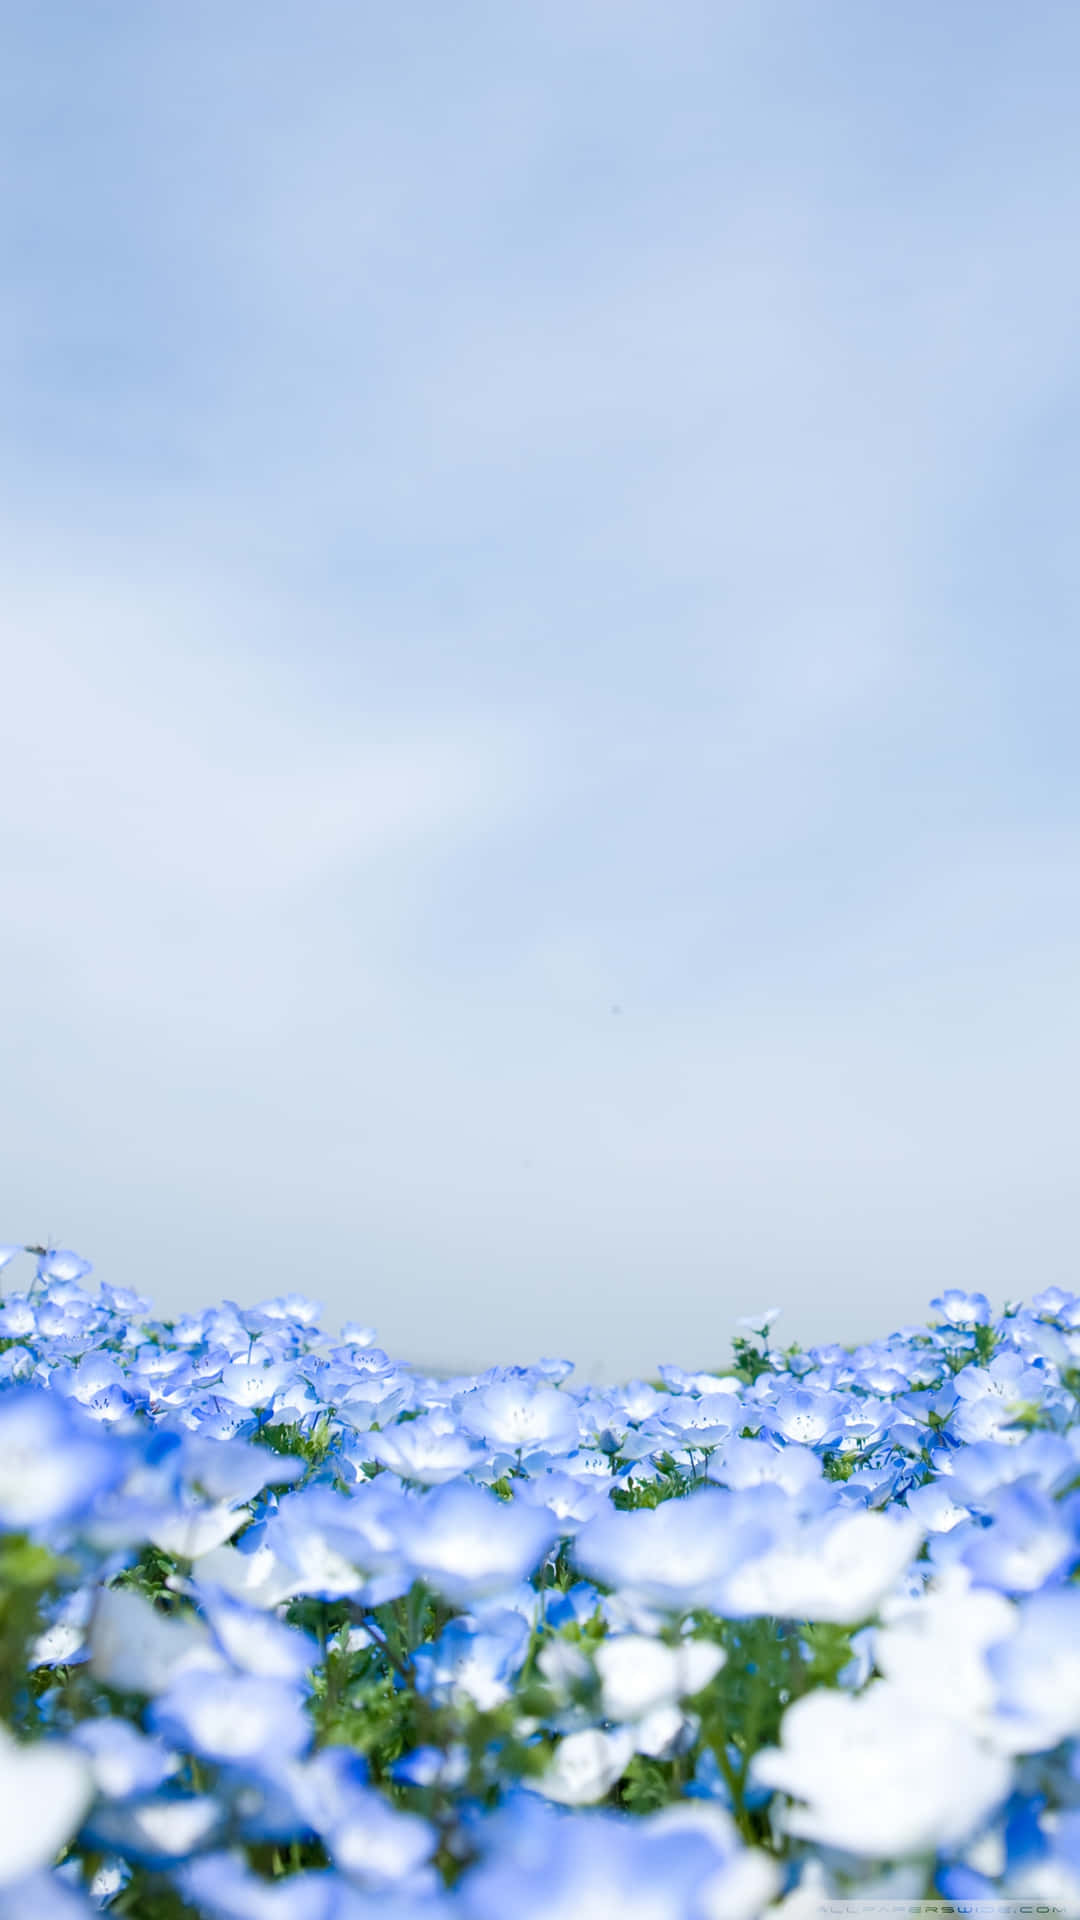 Immaginedel Giardino Di Fiori Blu Di Cristallo